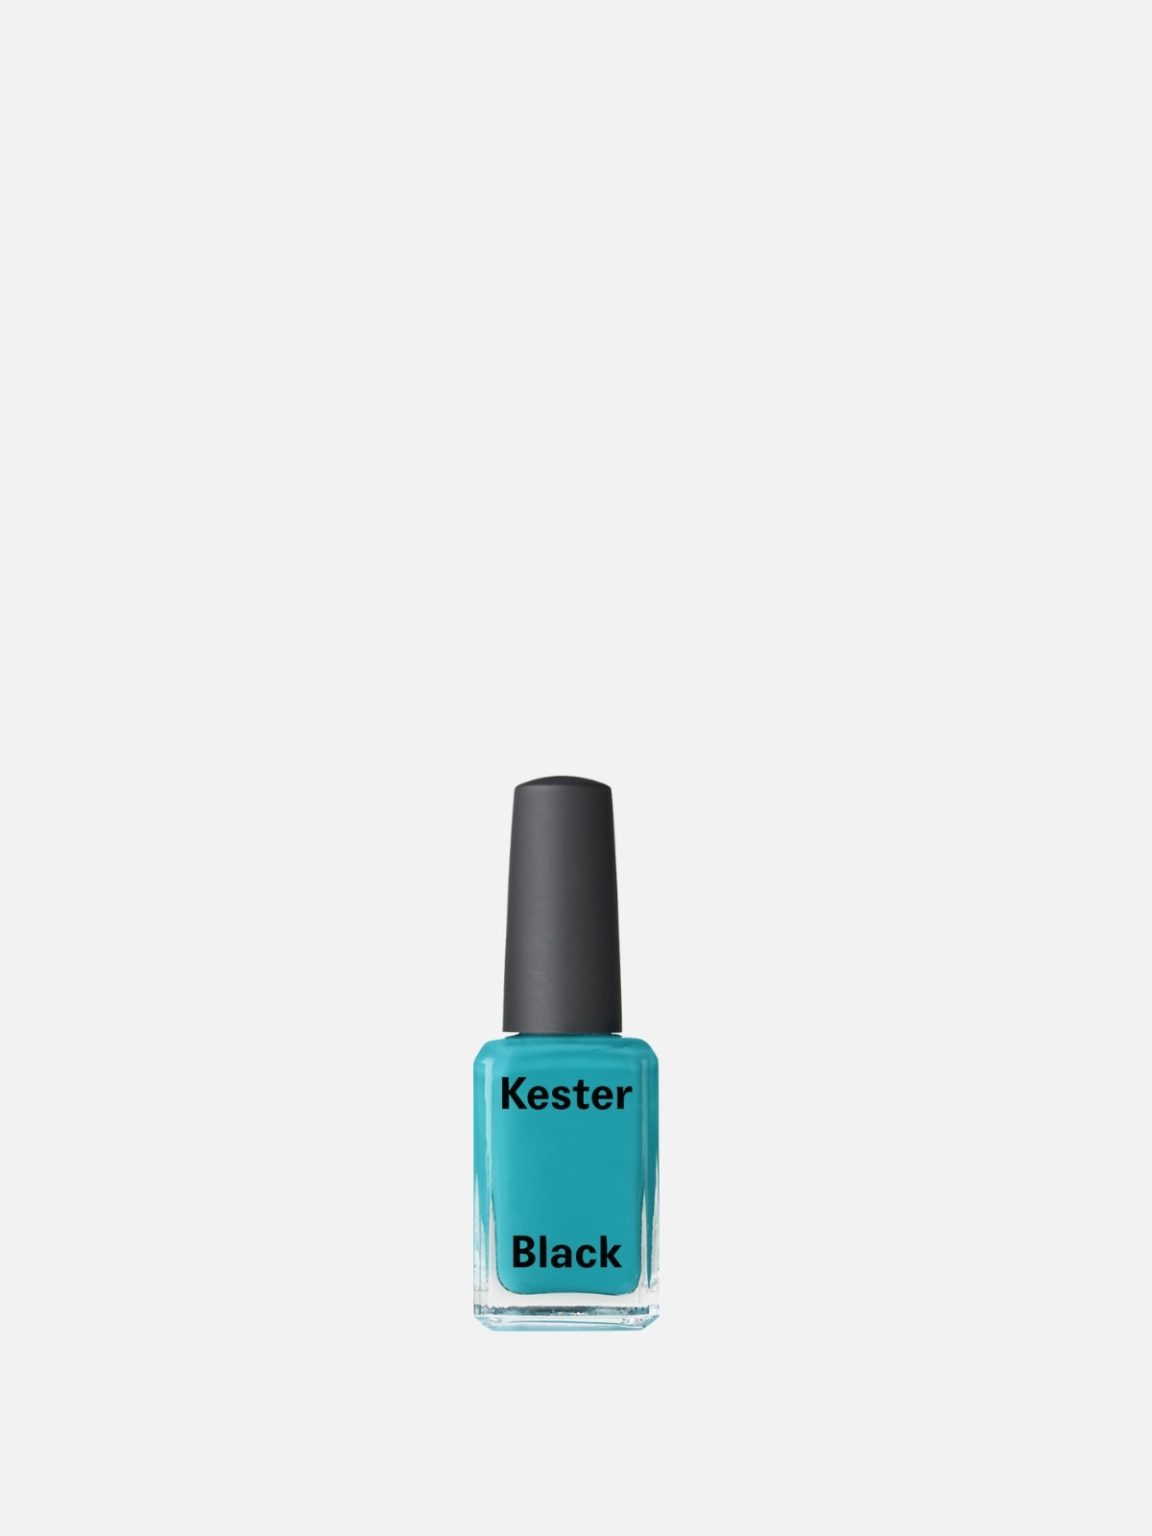 Kester Black - Terrarium - Smalto blu bondi